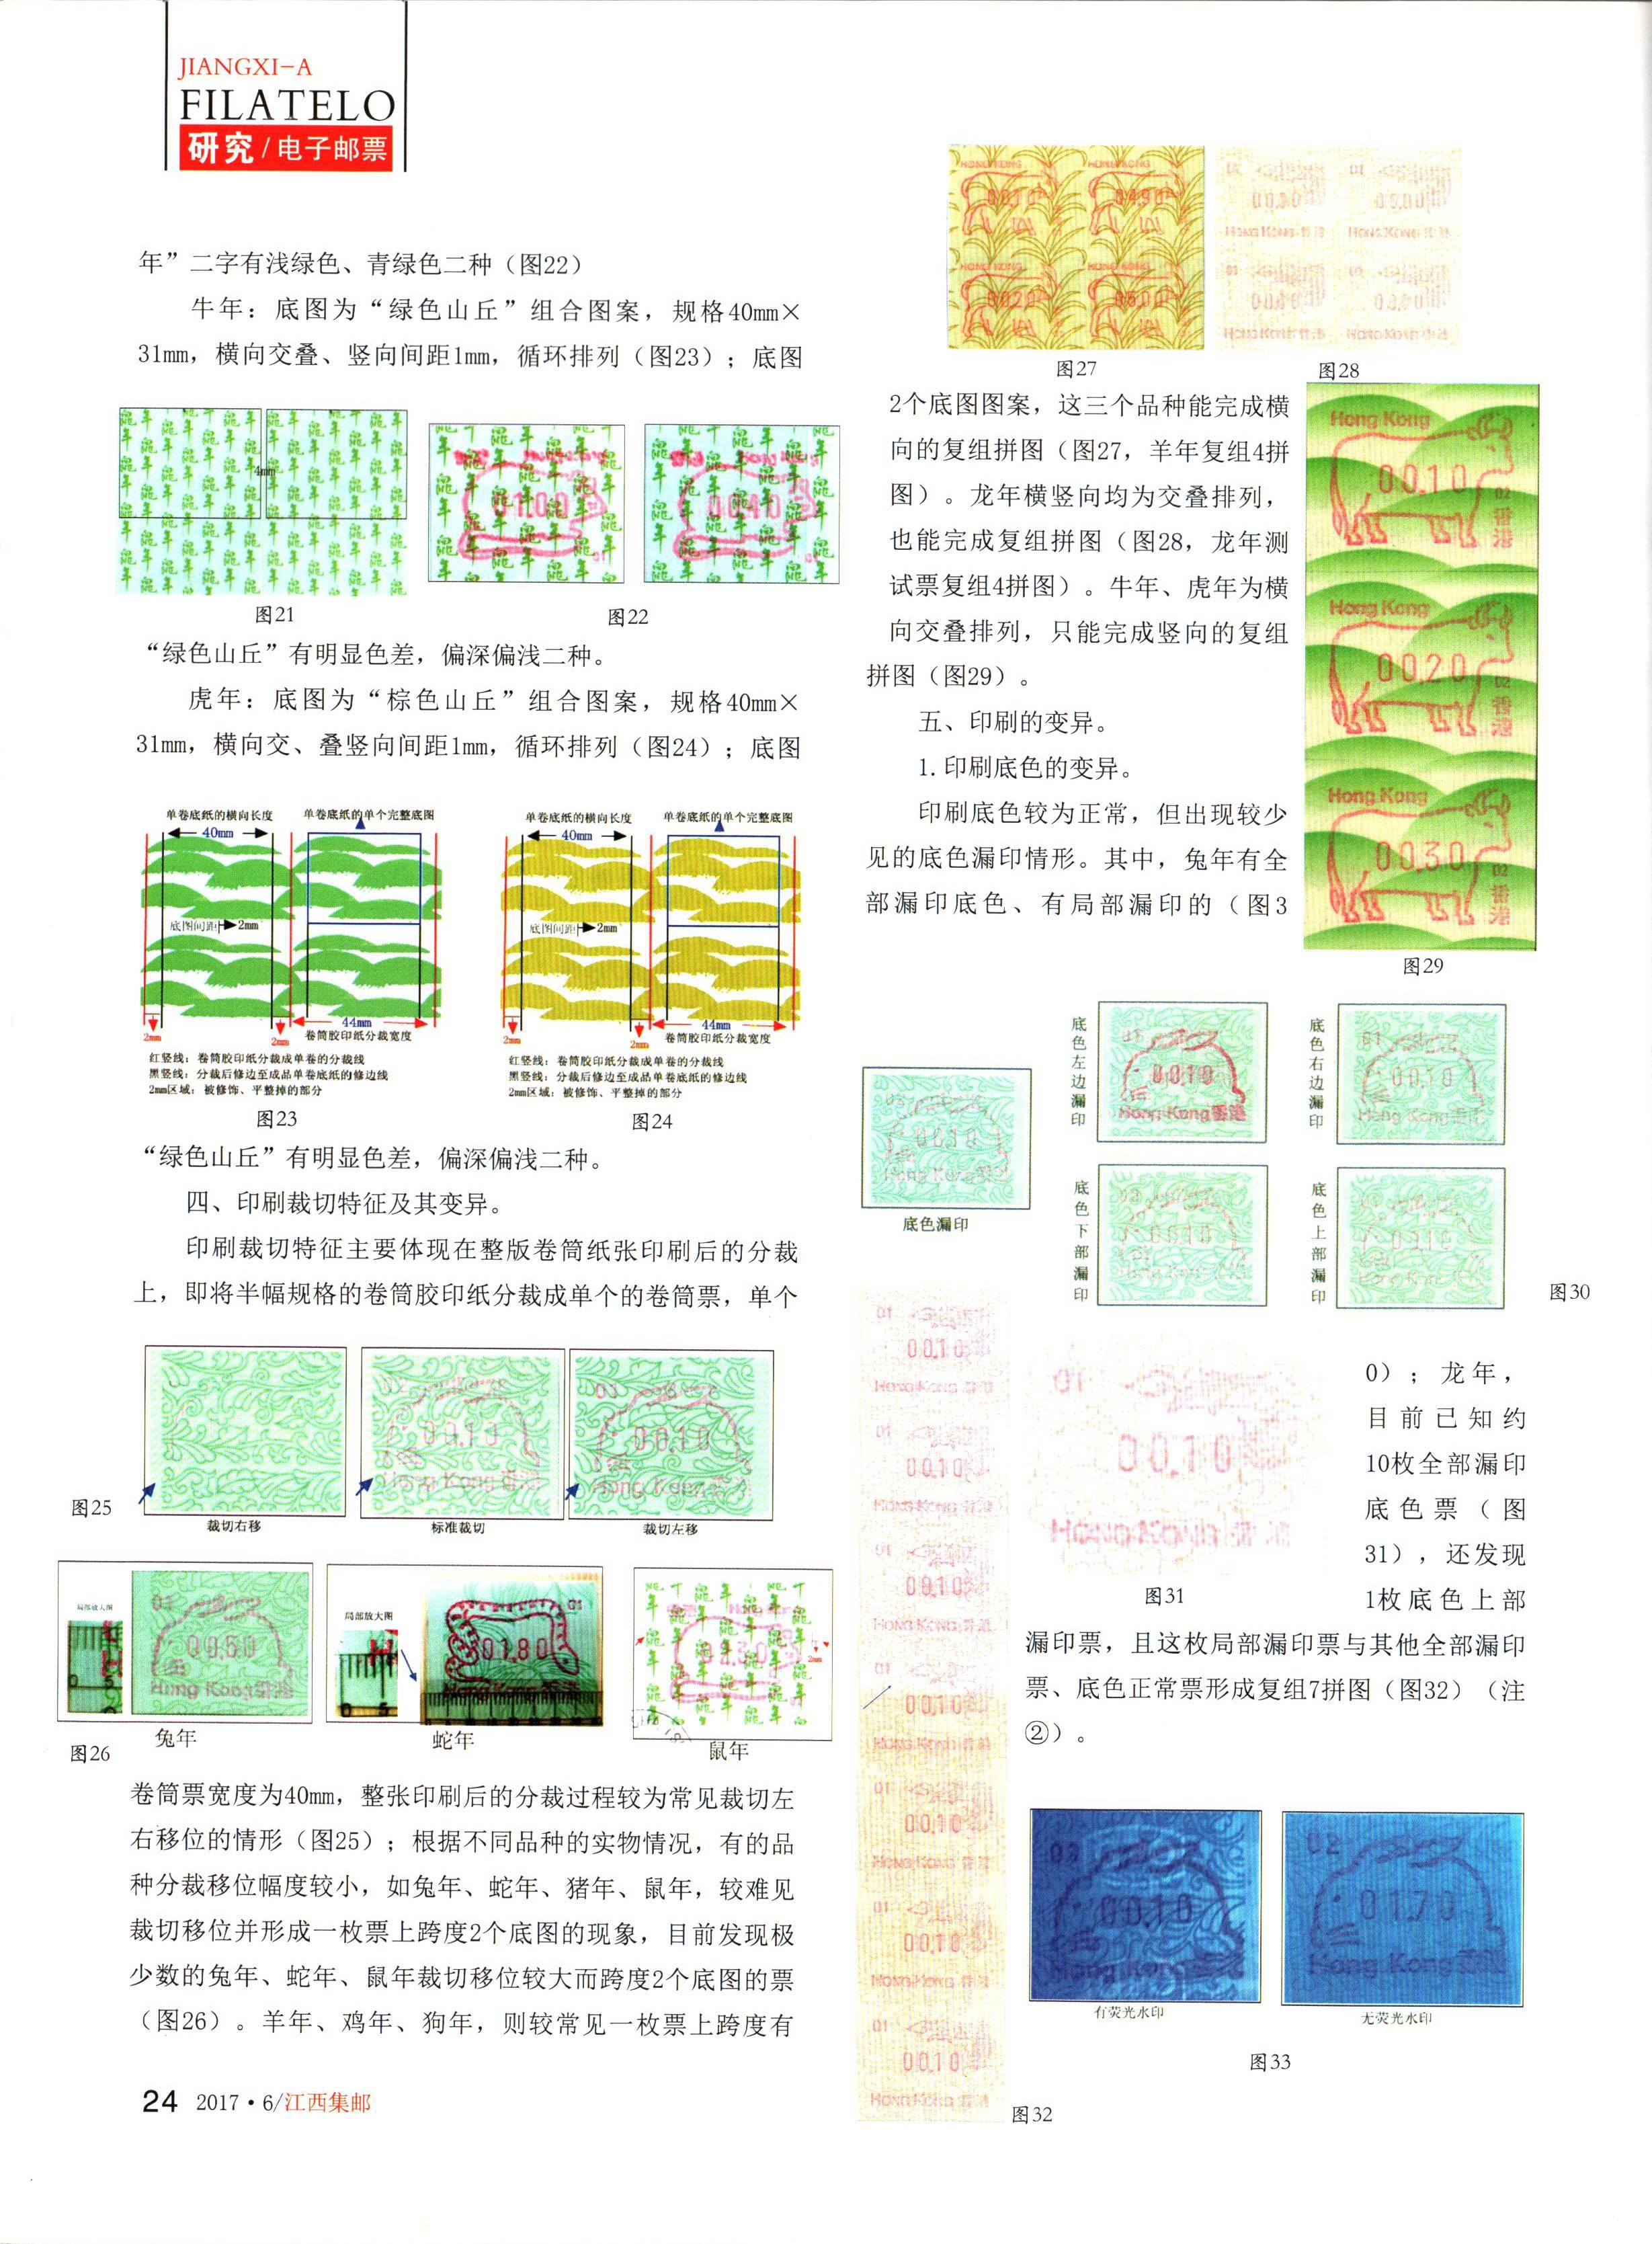 香港十二生肖自动化邮票的印刷特征3（江西集邮2017